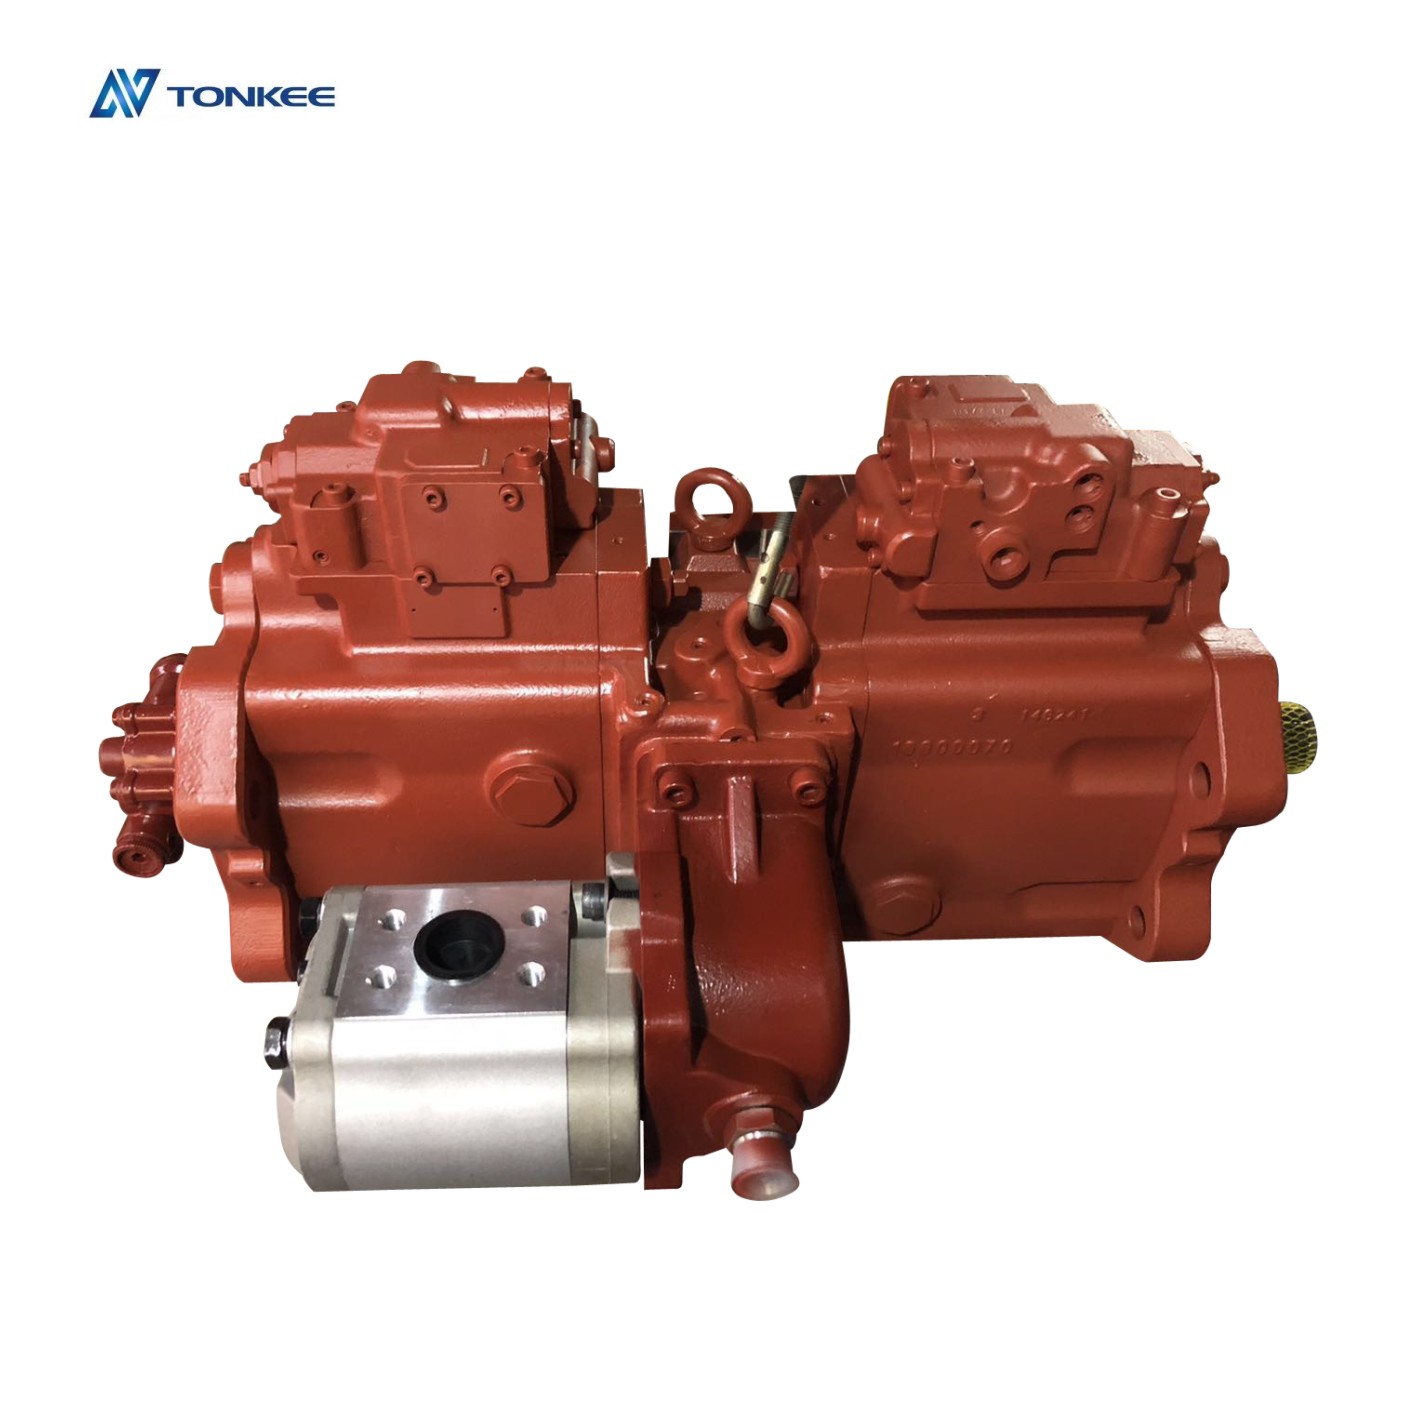 NEW K3V180DTP piston pump 3228733 converted hydraulic pump parts replace A8VO200 E336DE336Dmain pump